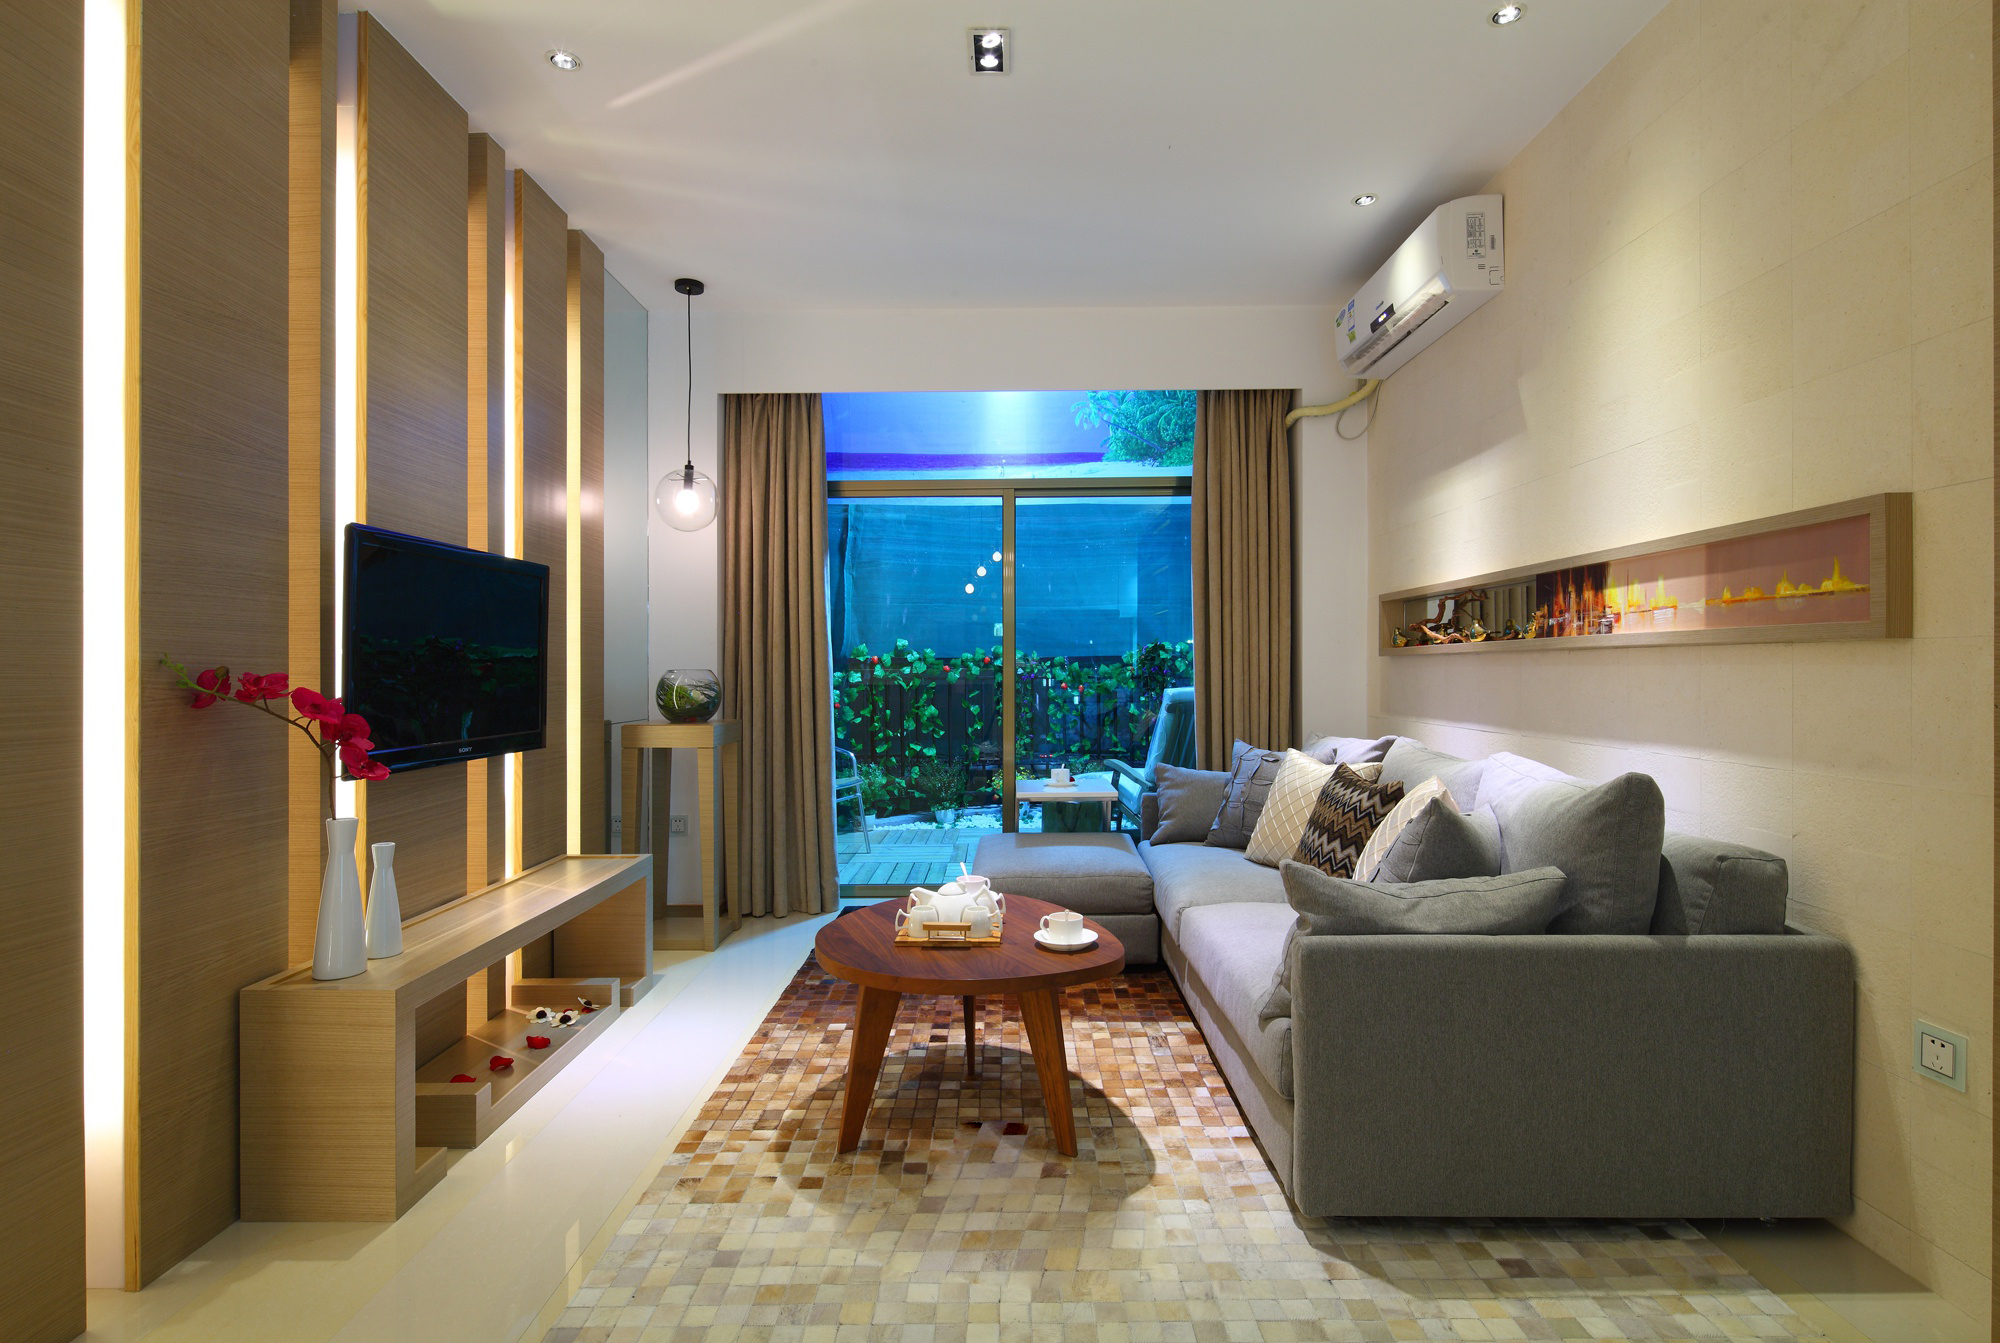 二居室装修,70平米装修,10-15万装修,现代简约风格,暖色调,电视背景墙,沙发背景墙